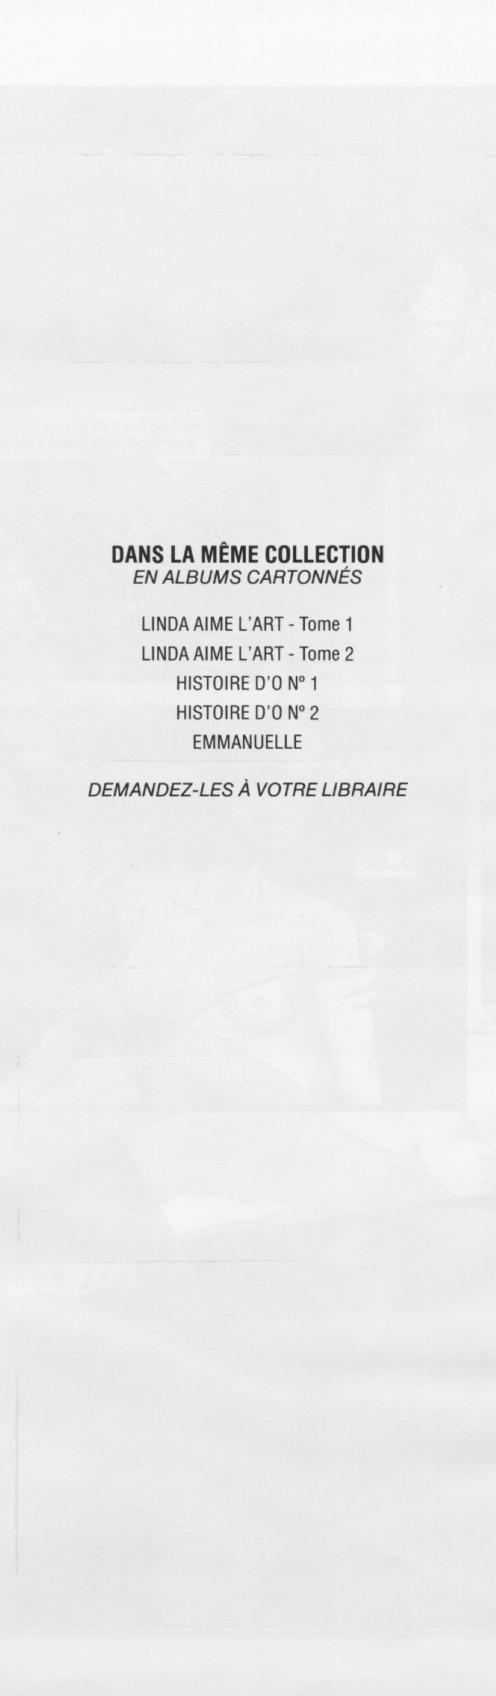 Linda Aime LArt Vol.2 numero d'image 54